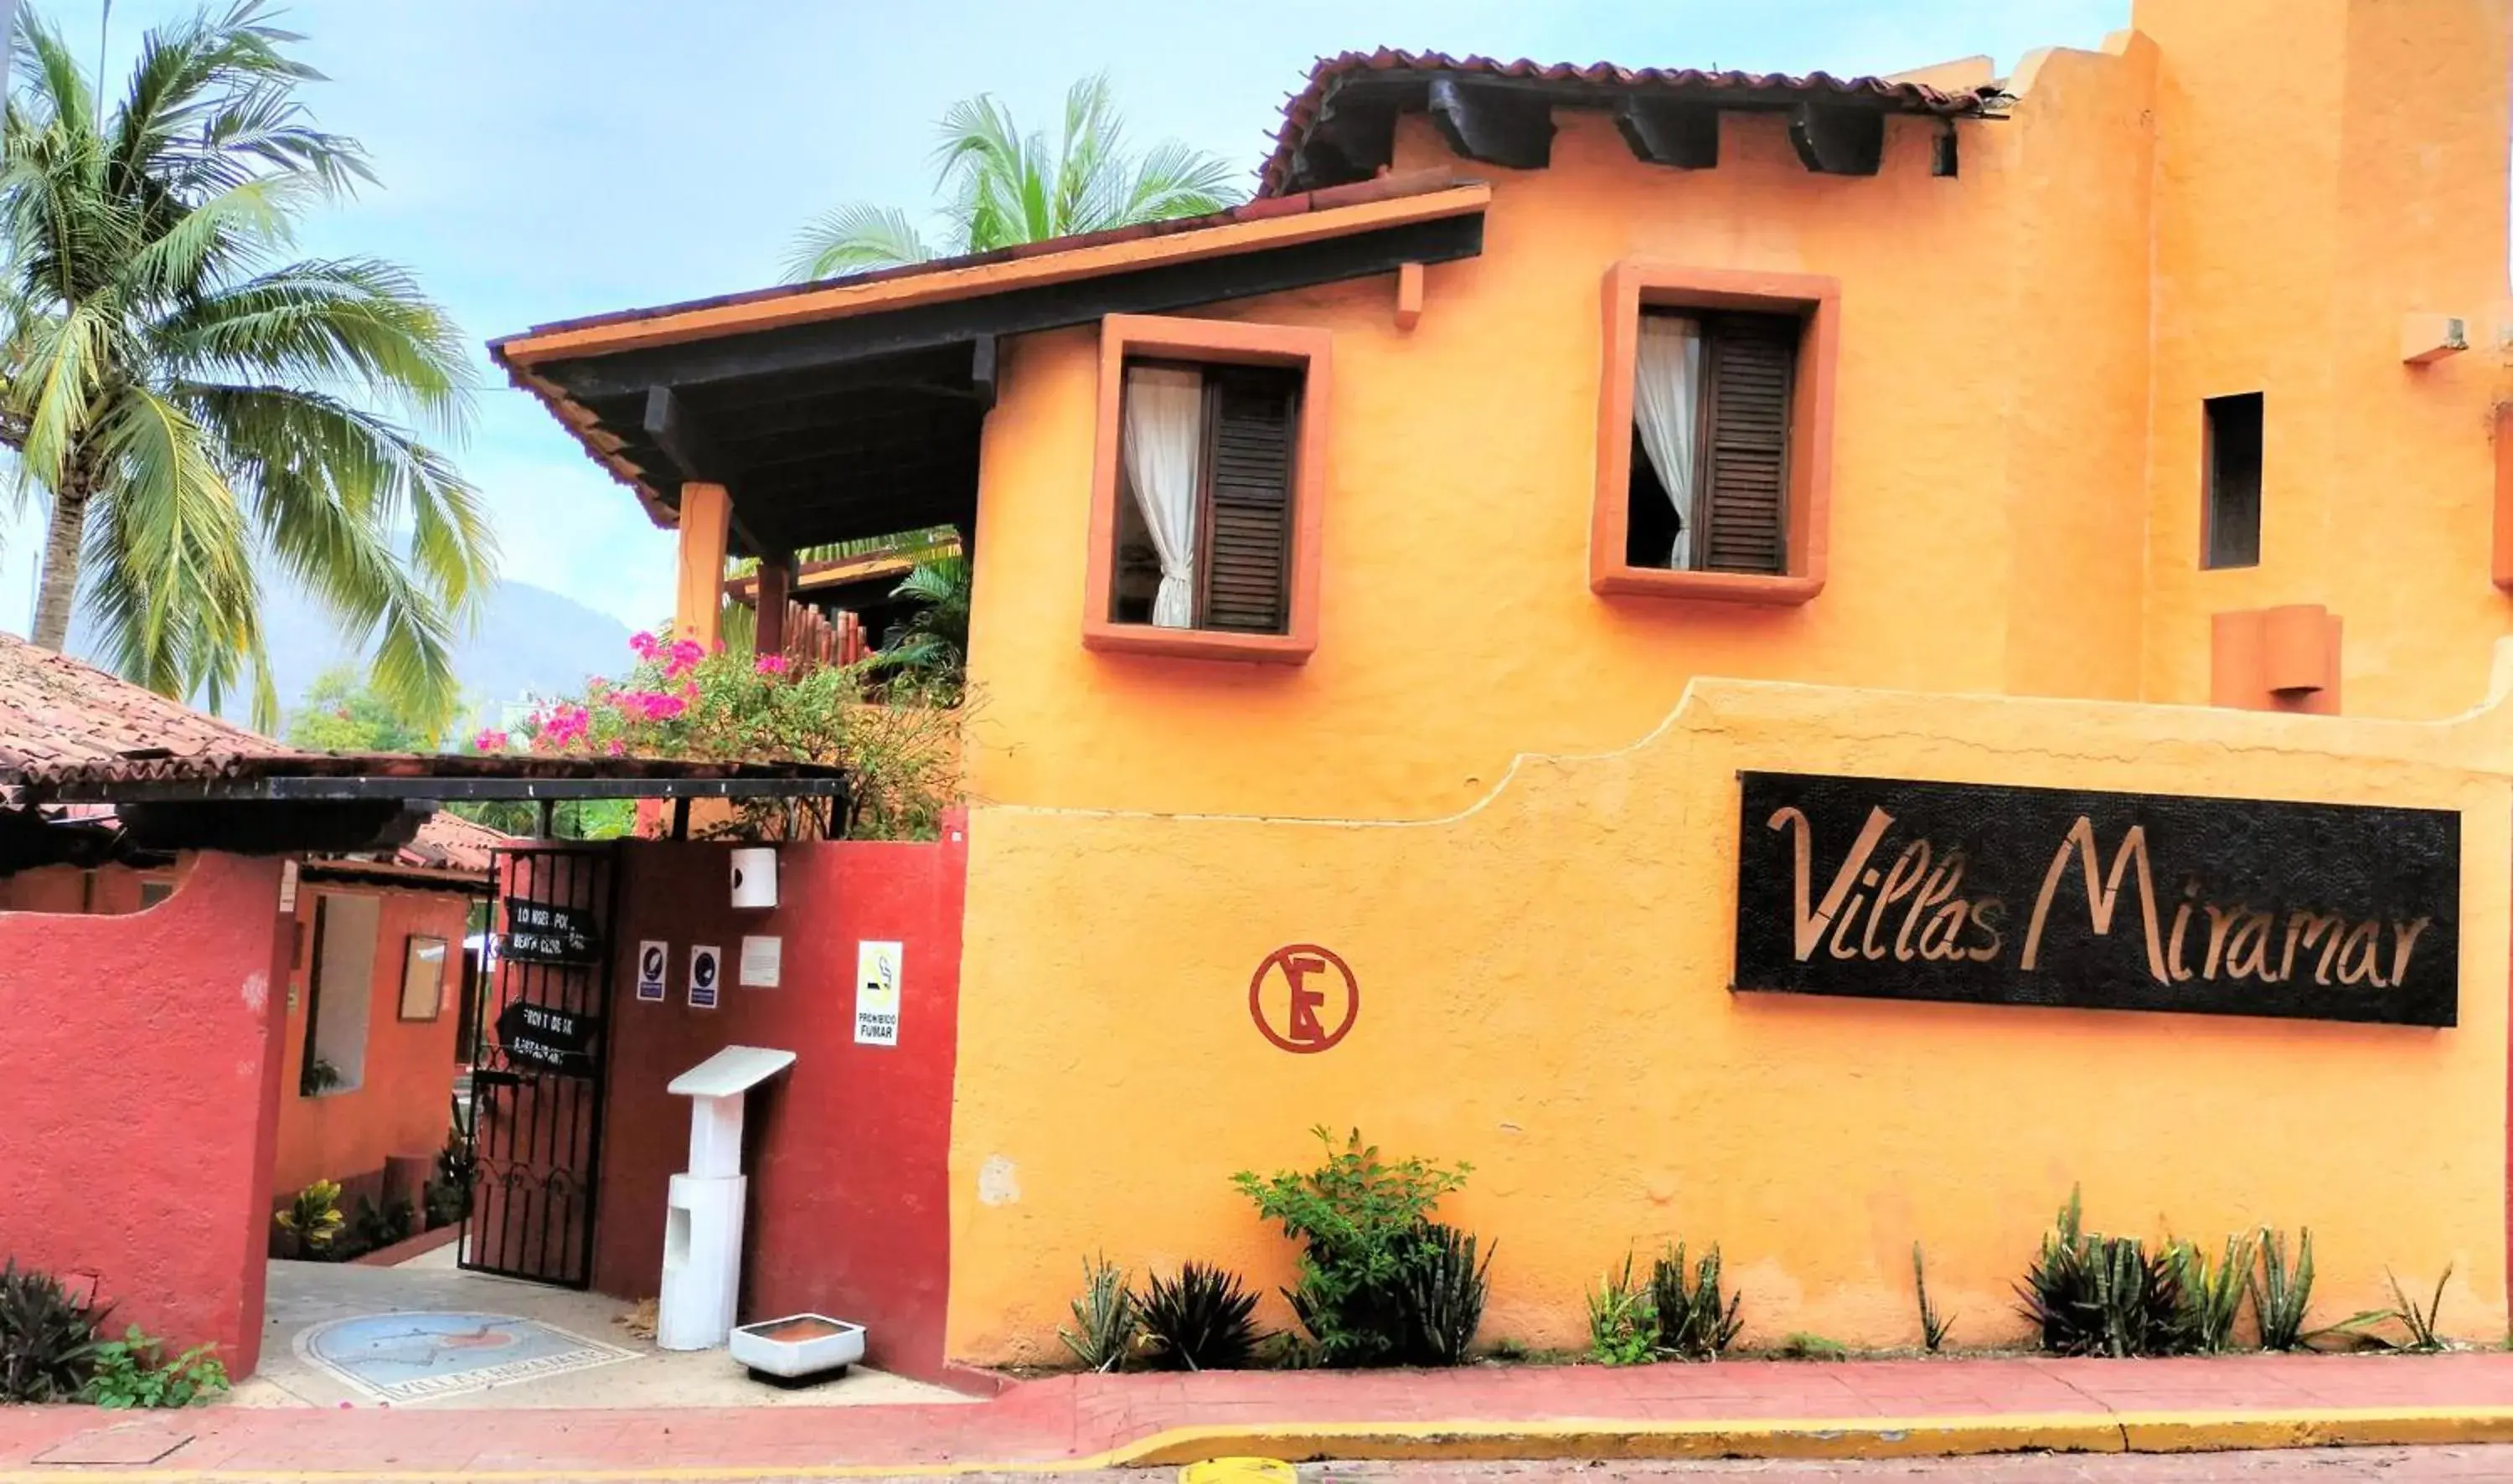 Property Building in Villas Miramar